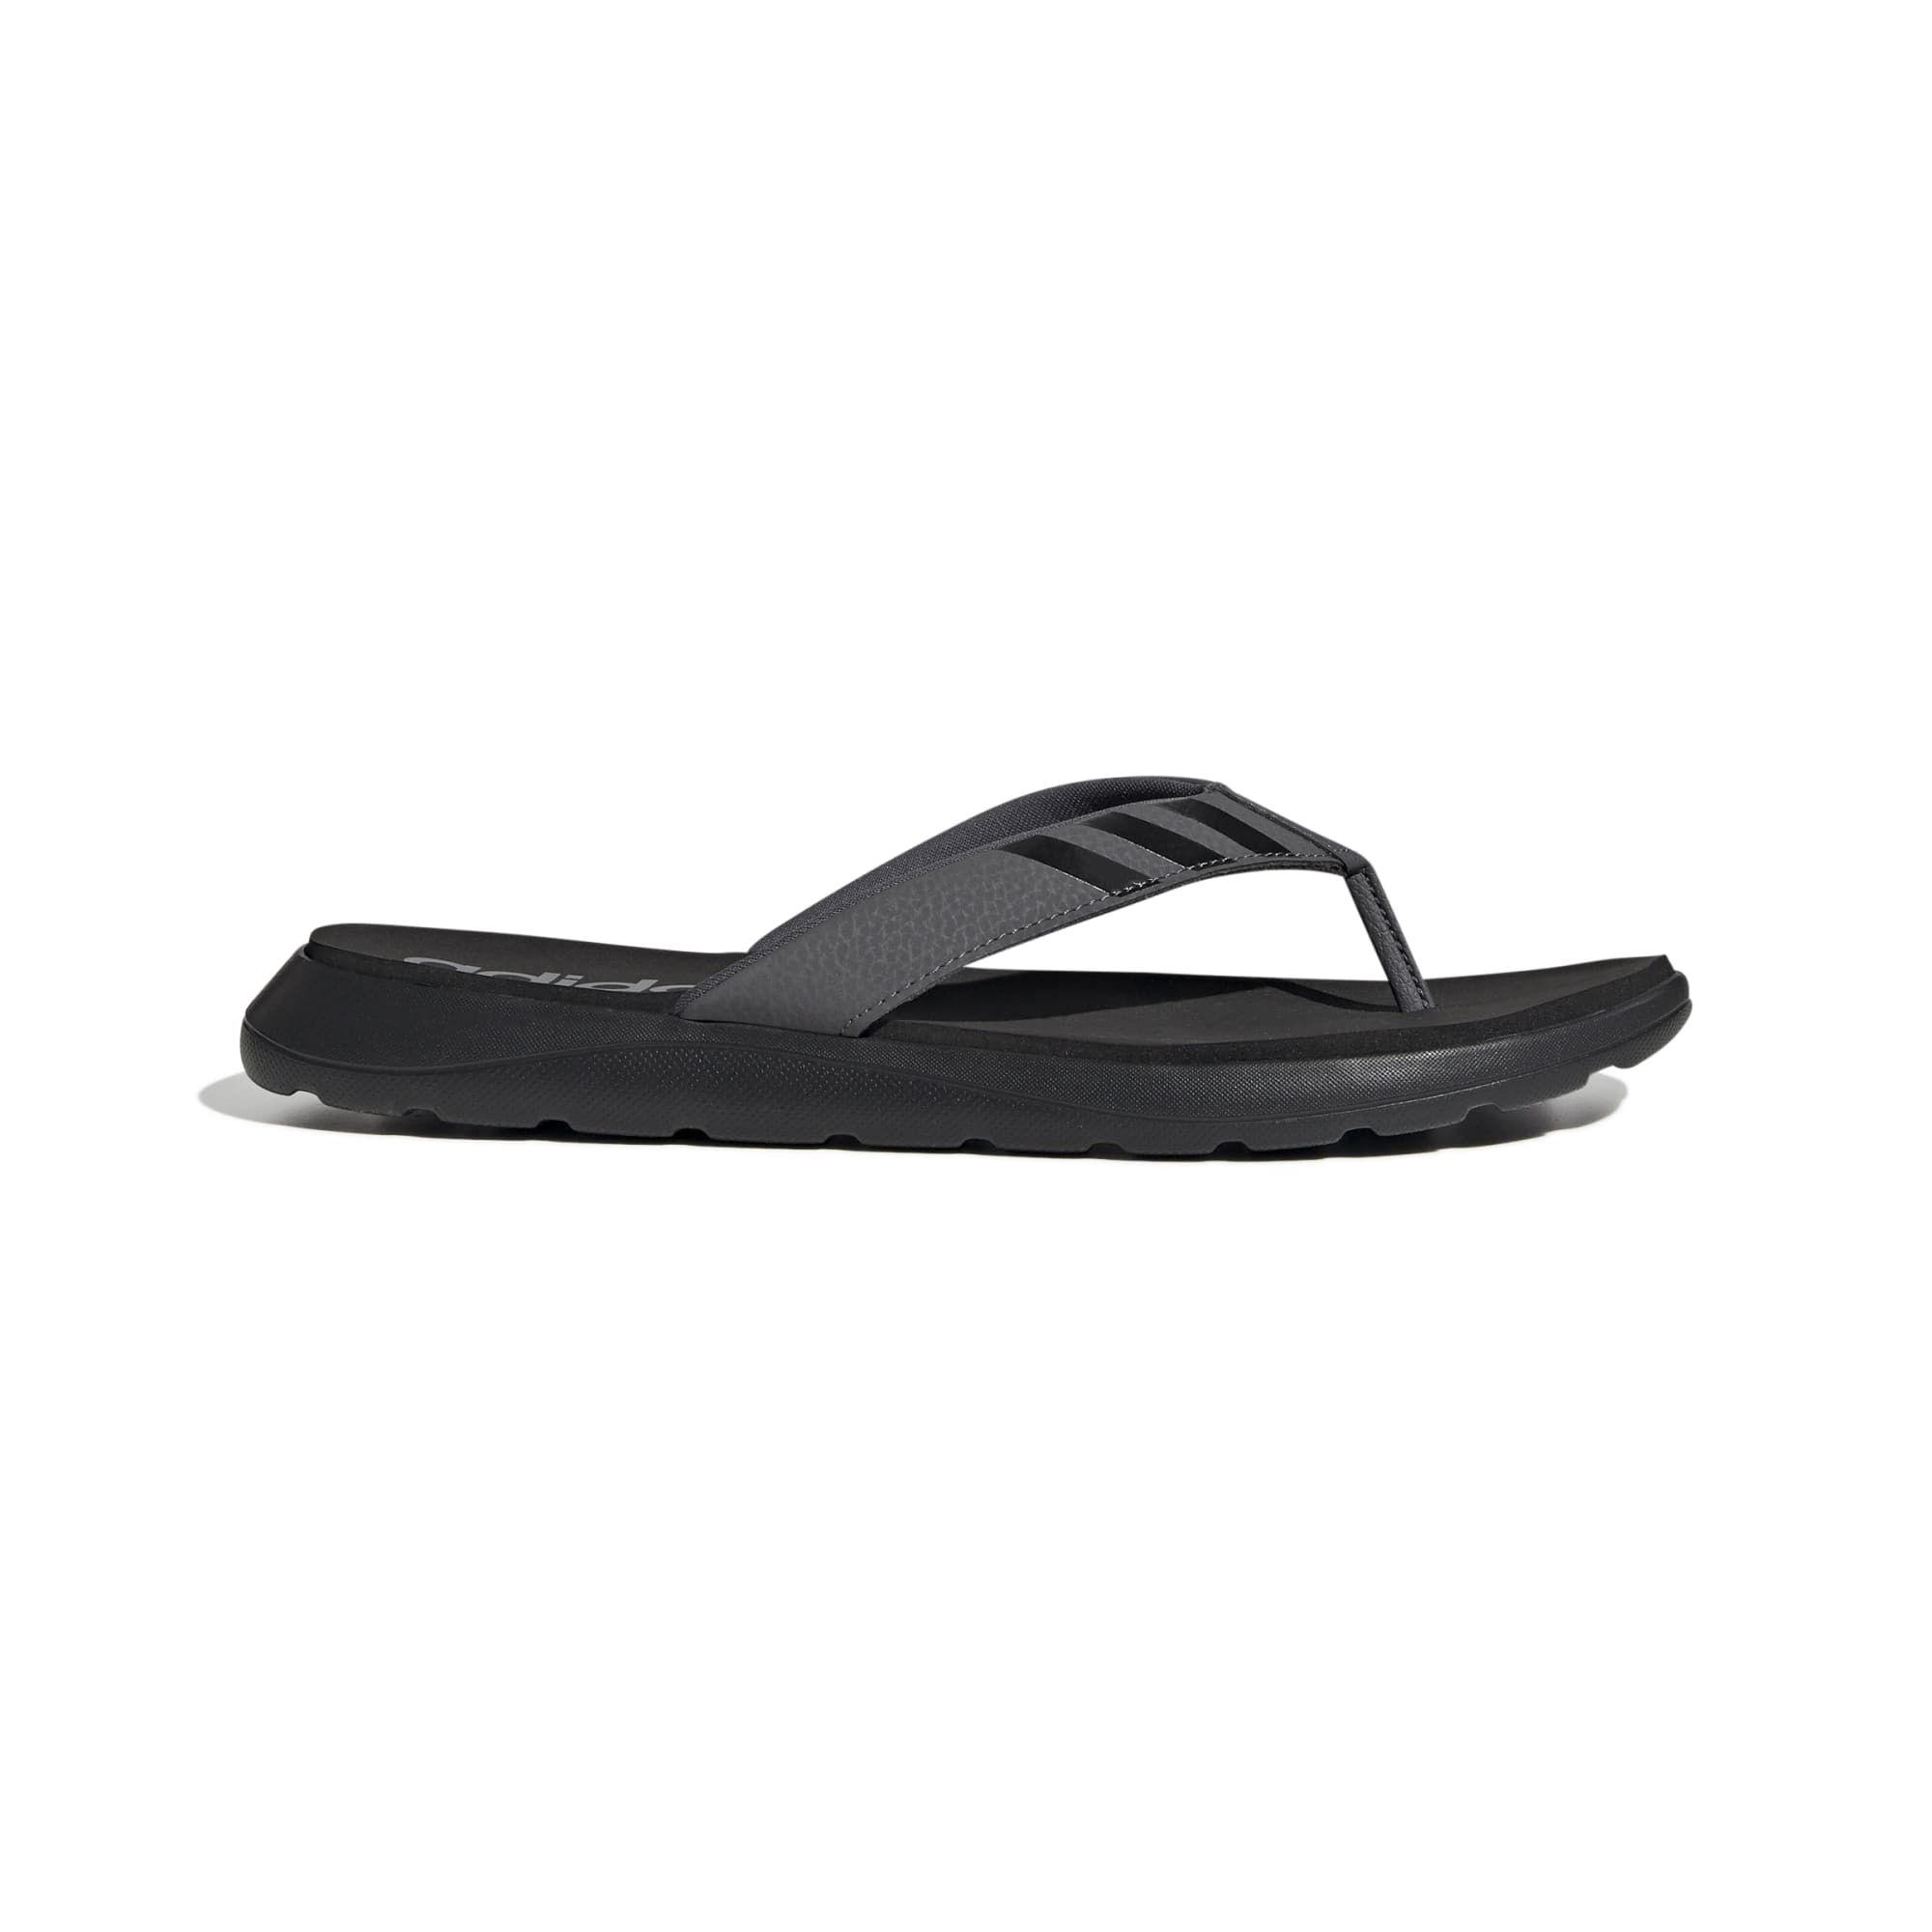 Men's Sandal & Flip Flops | Sonee Sports